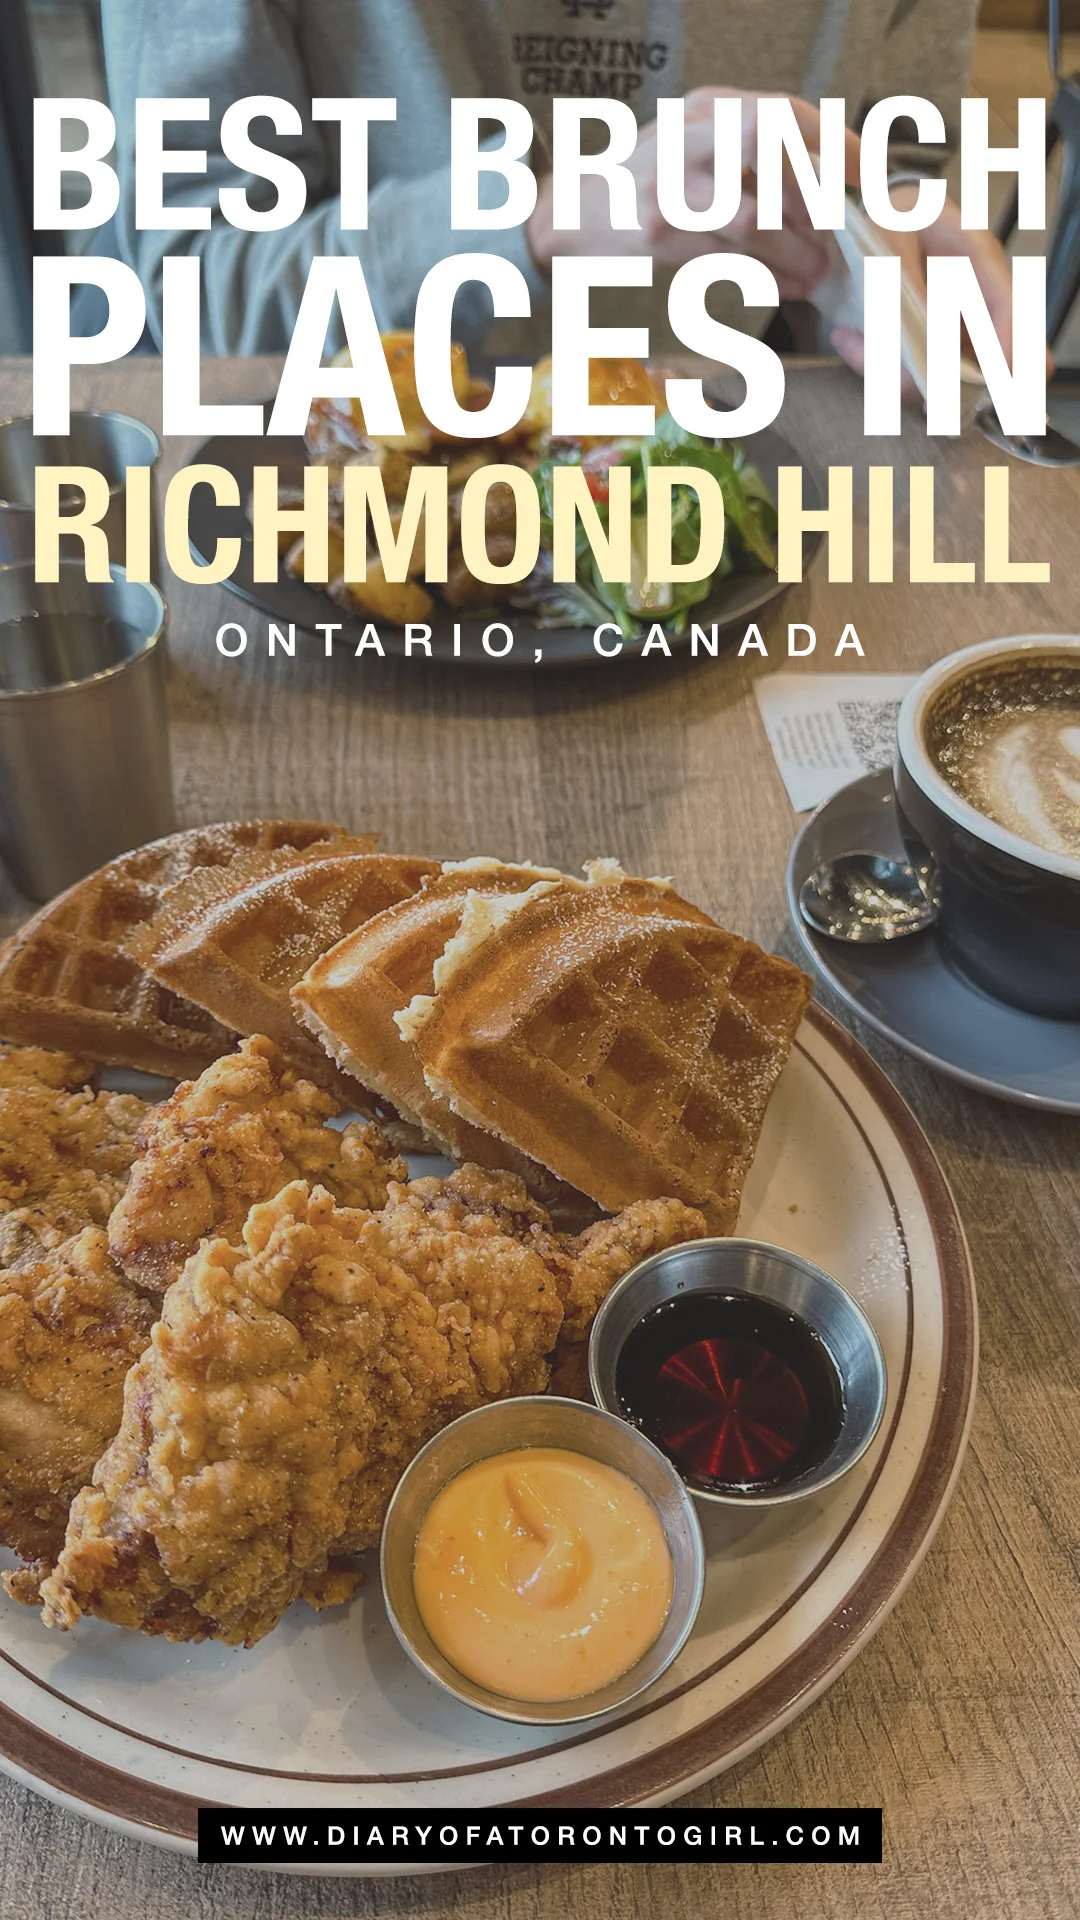 Best brunch spots in Richmond Hill, Ontario